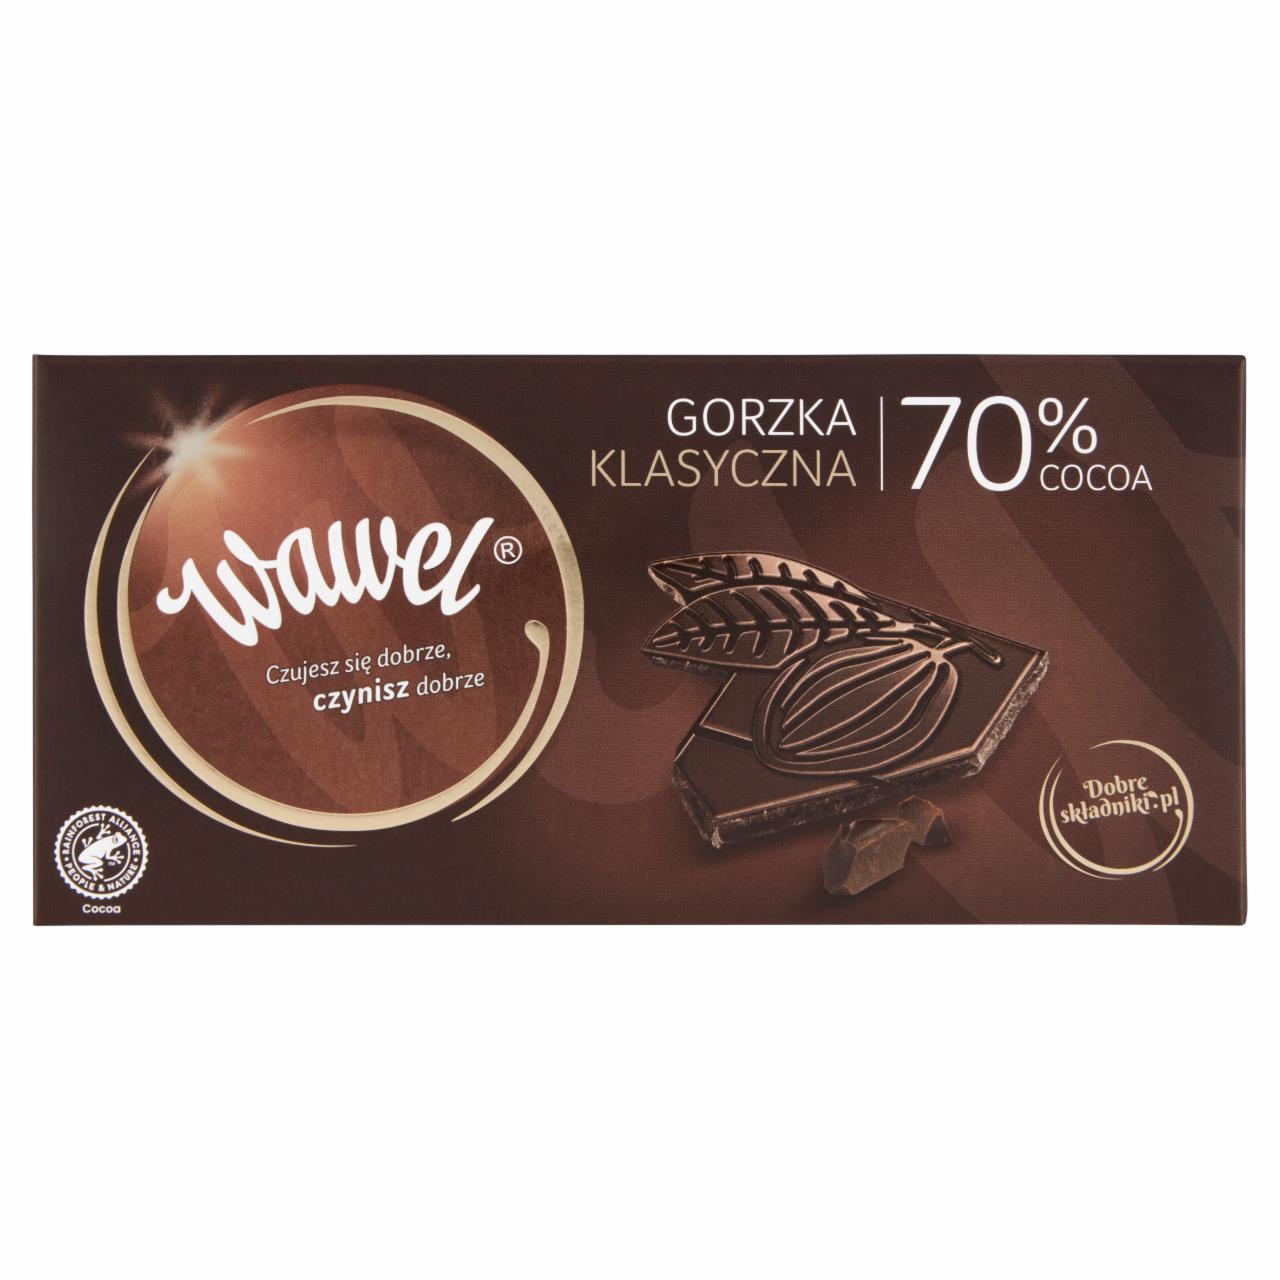 Zdjęcia - Wawel Czekolada gorzka klasyczna 70% cocoa 100 g